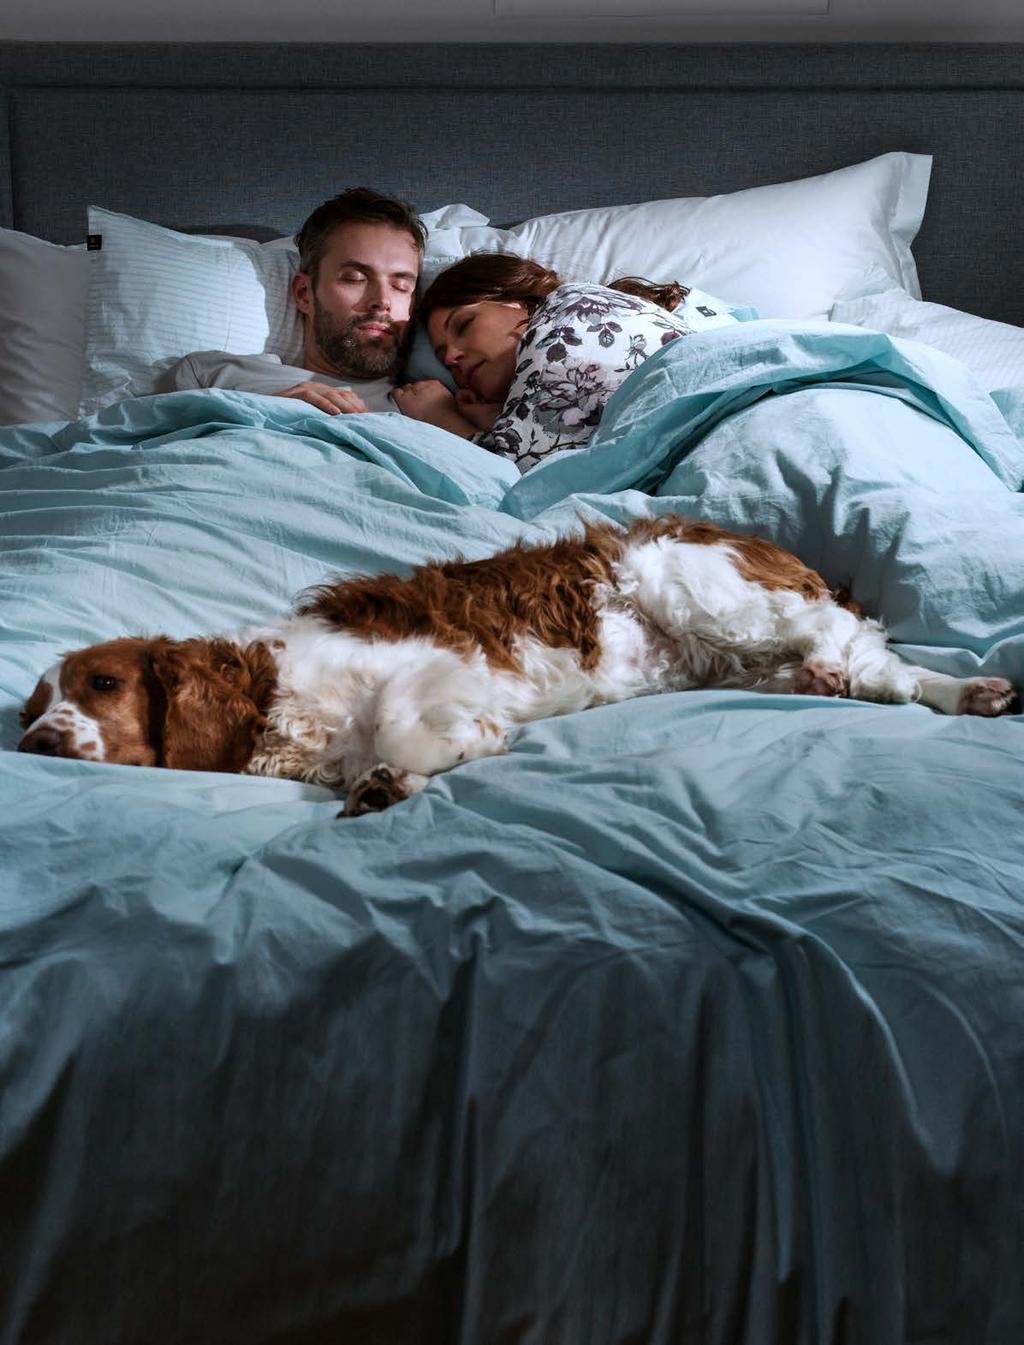 Sängvanor Djurs närvaro kan ha en tryggande och avslappnande effekt. En lugnt snusande hund eller spinnande katt som sällskap kan göra det lättare att somna.